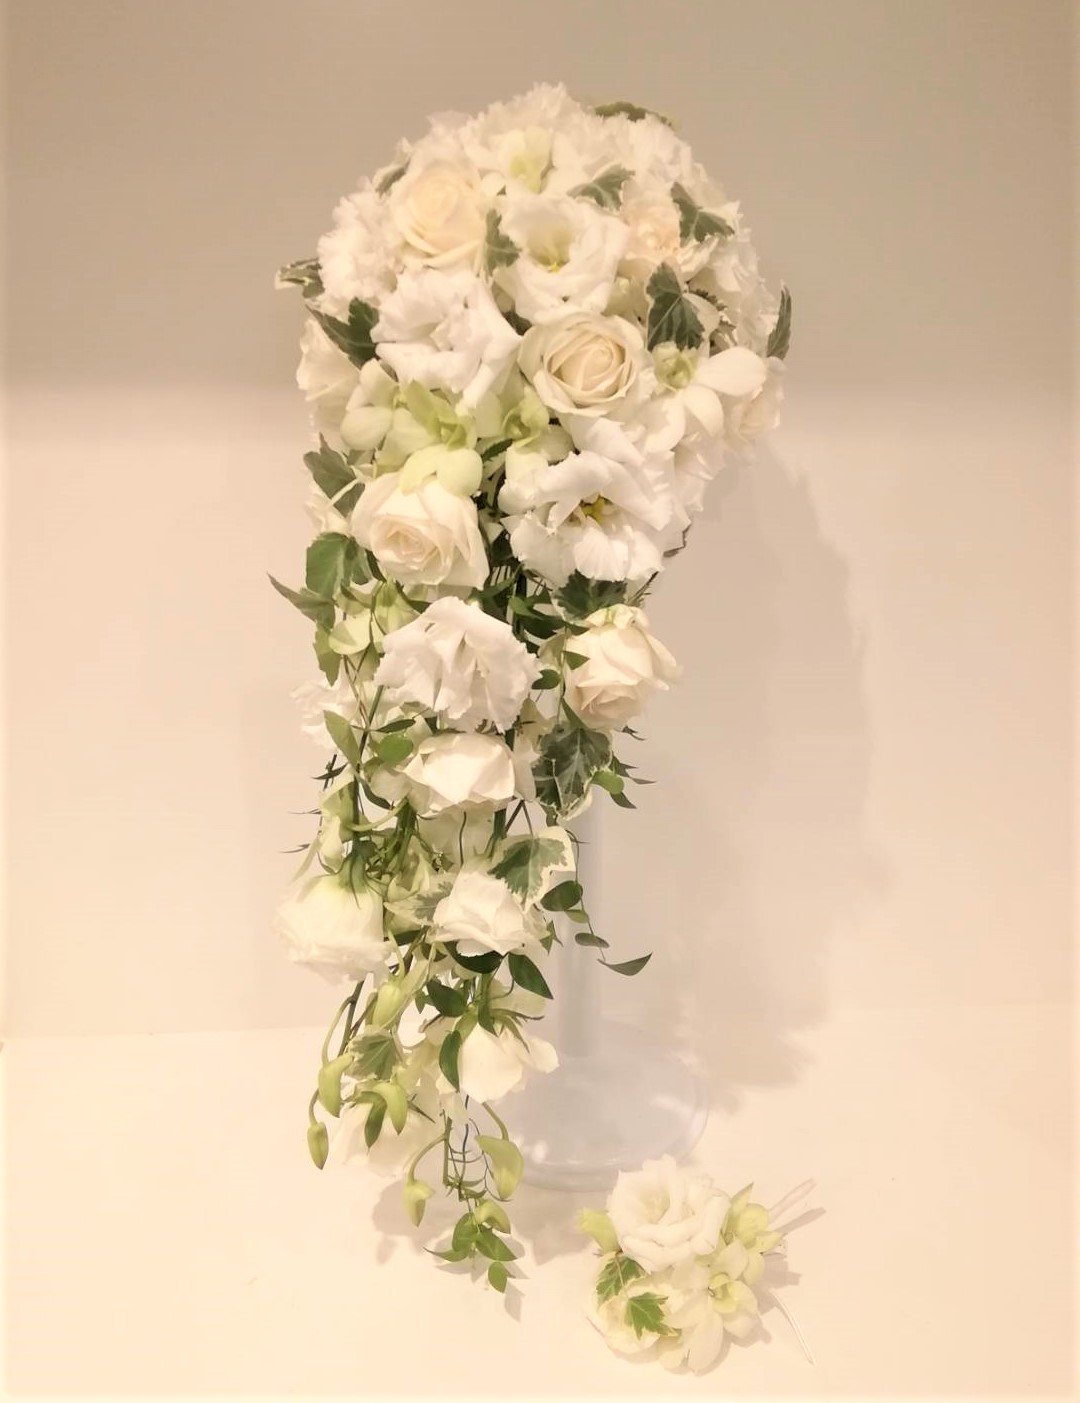 ウエディングブーケ16500円 フラワーギフト・花を贈るなら フラワー